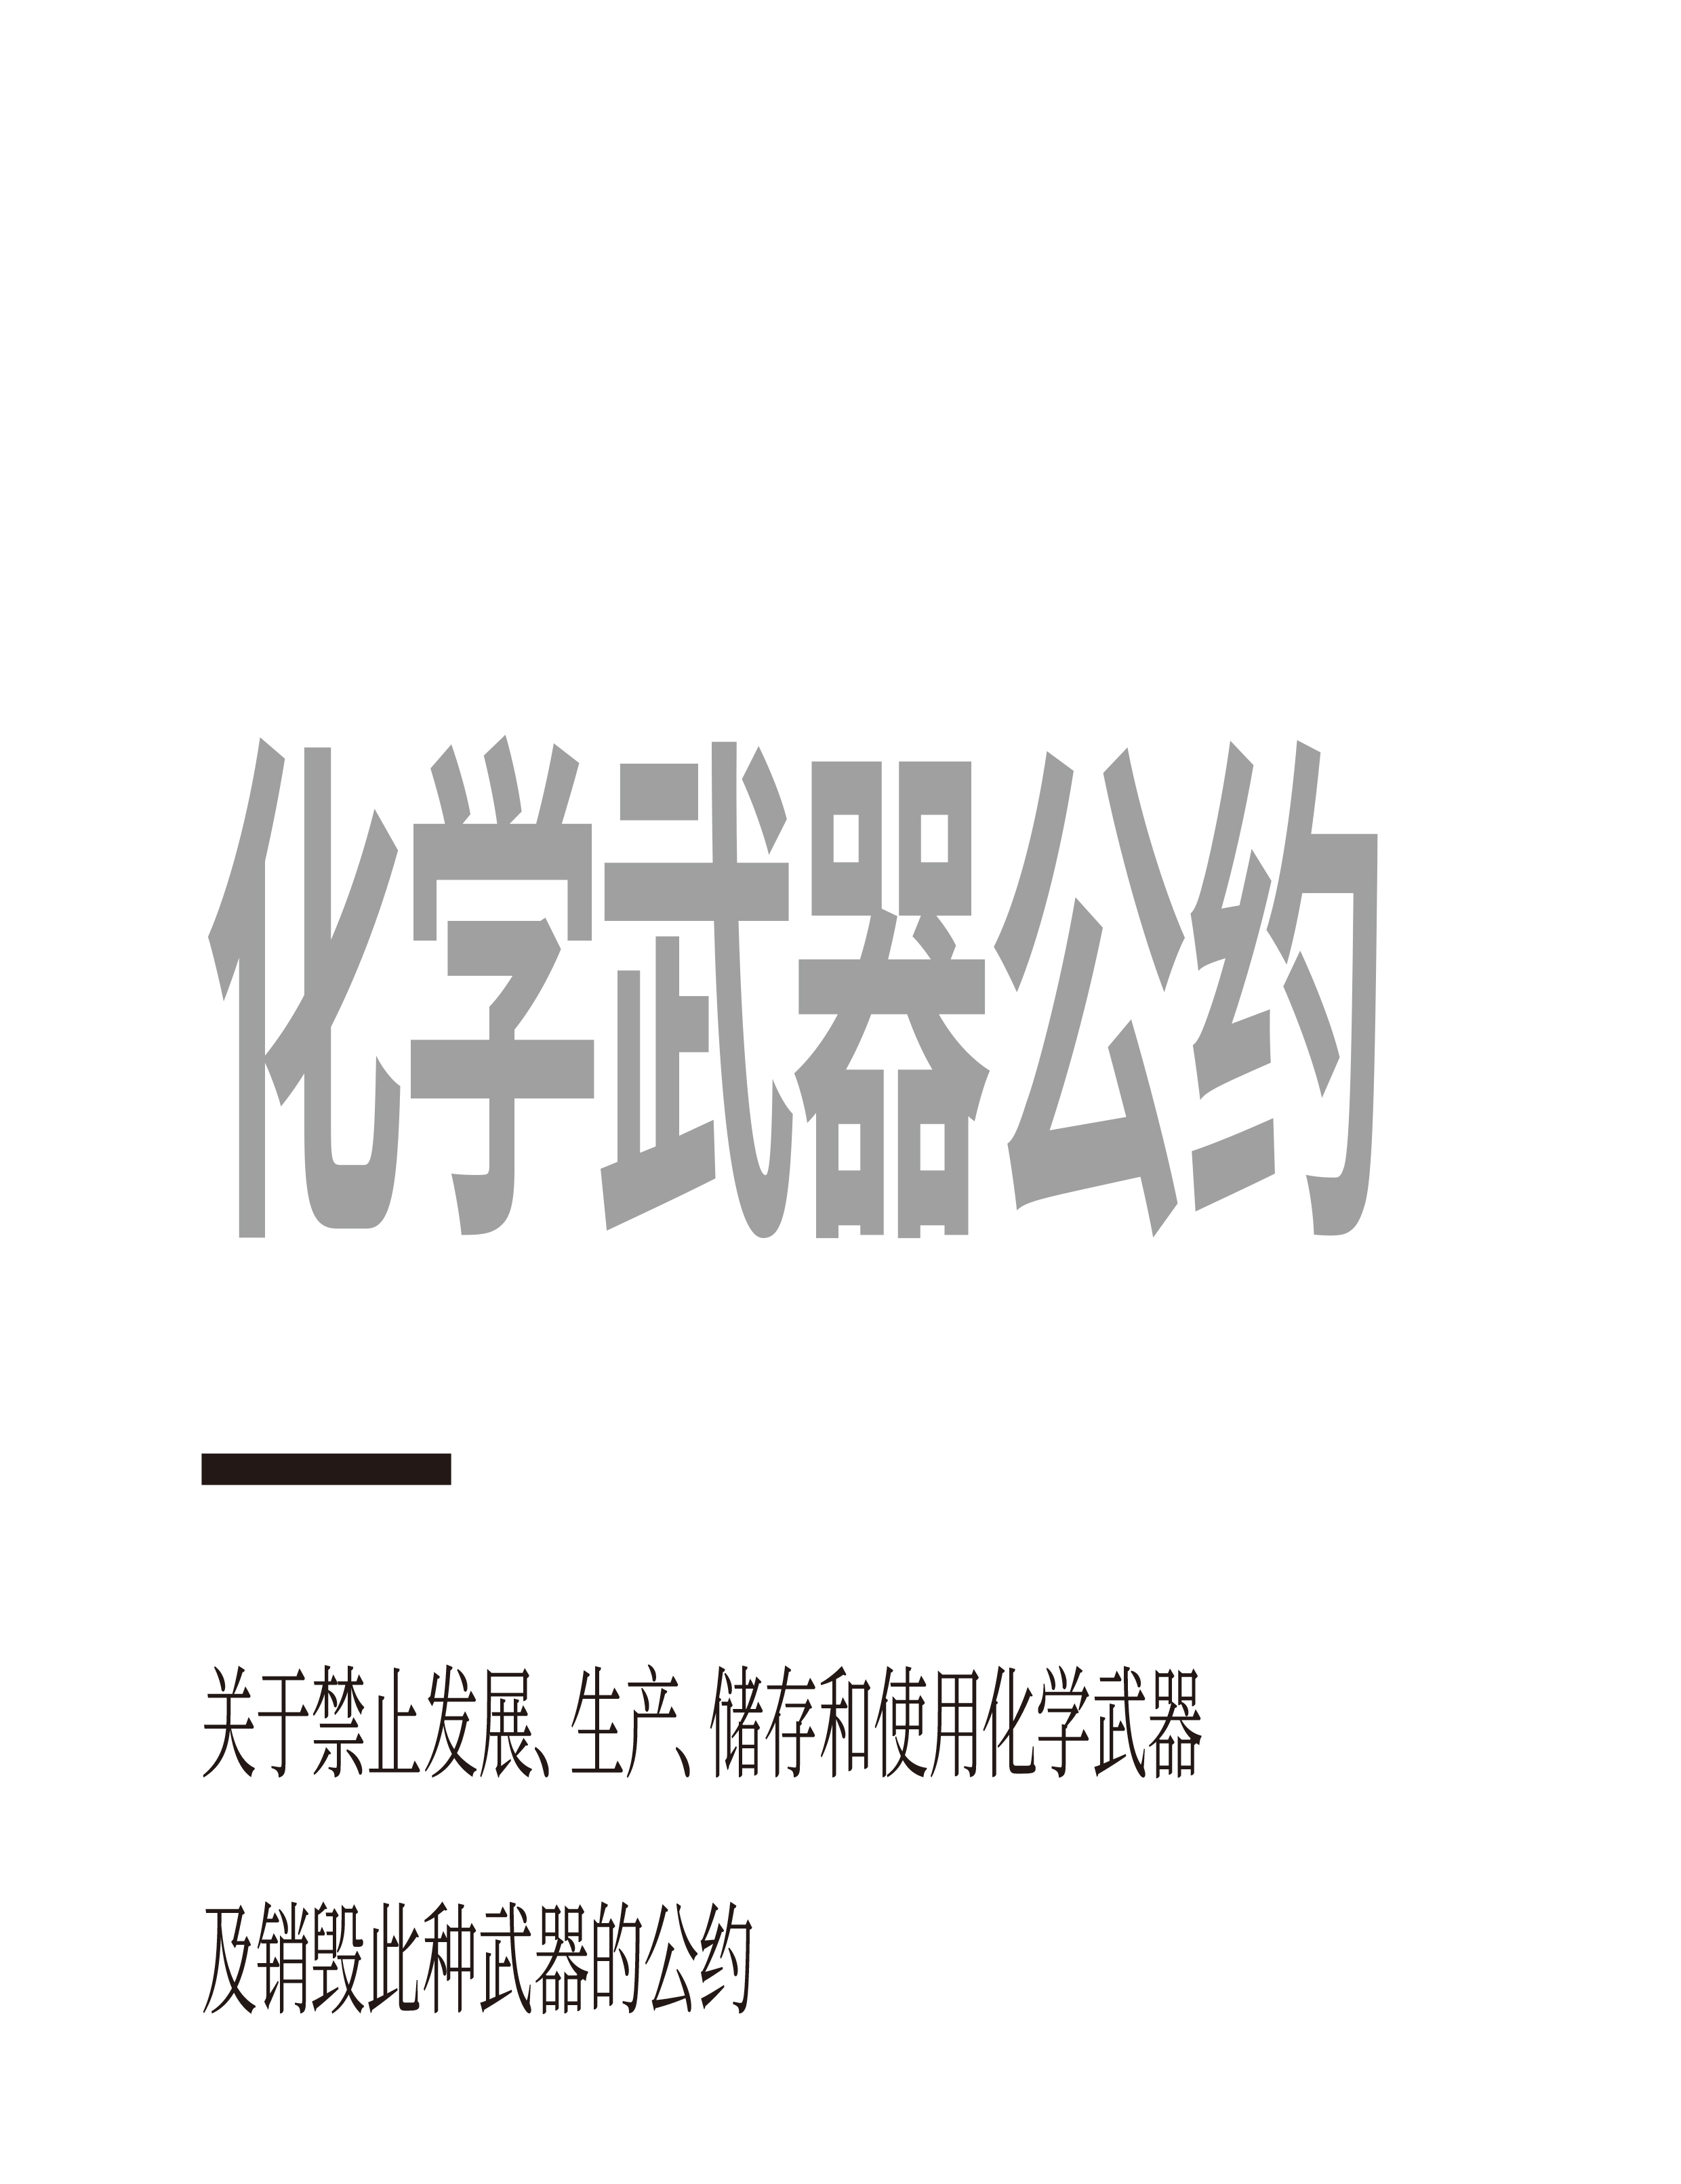 禁止化学武器公约-中文版-1.jpg